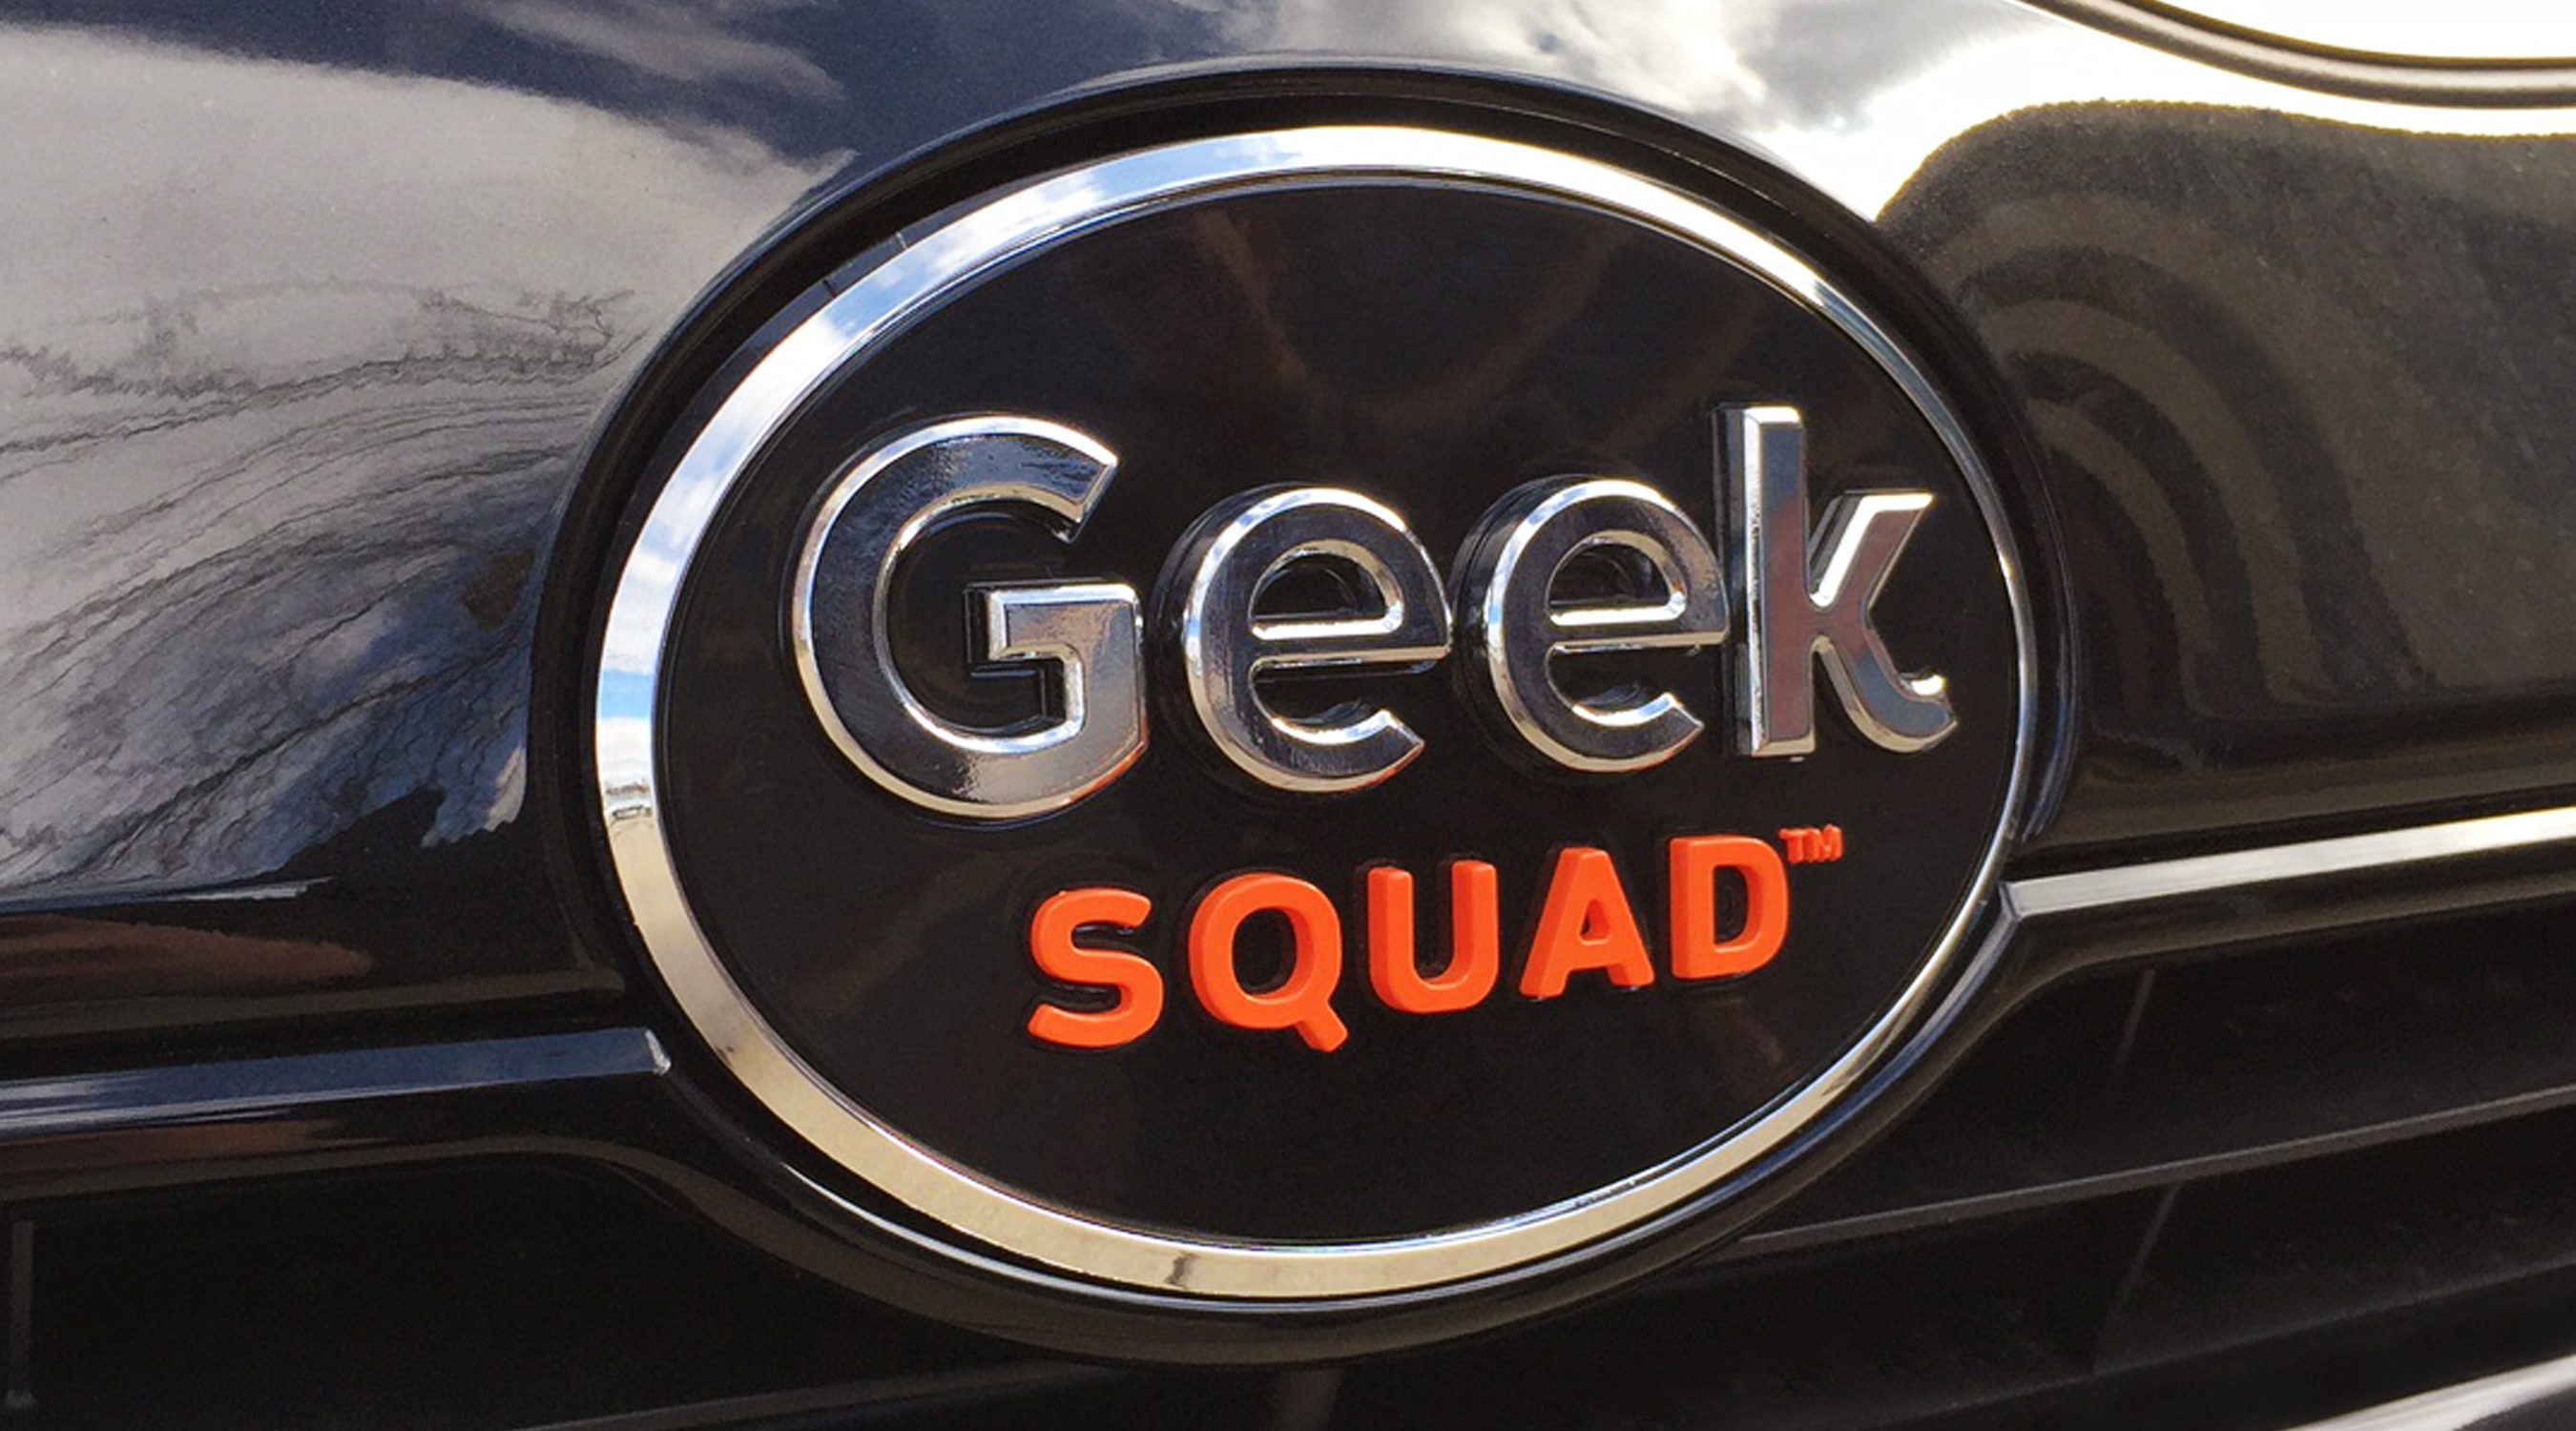 geek squad logo